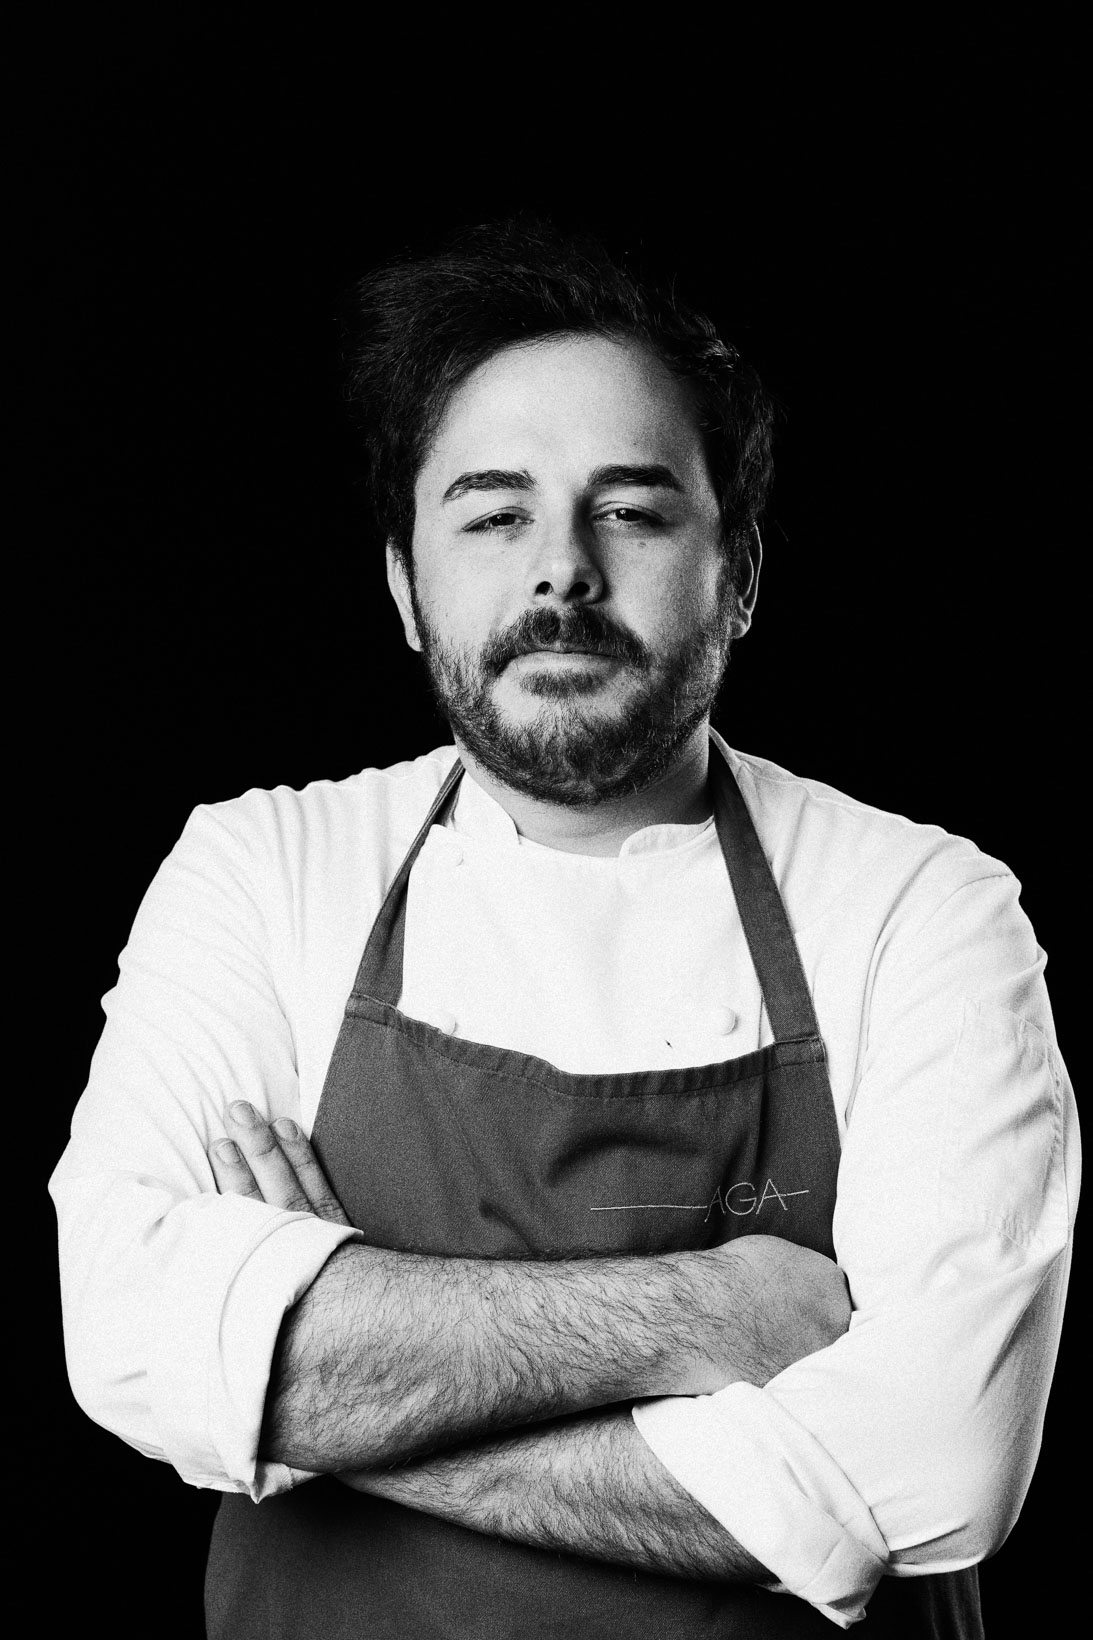 Rui-Lorenzo-Fotografo-food-chef-oliver-piras-ristorante-aga-bl-_RUI8727_p_web